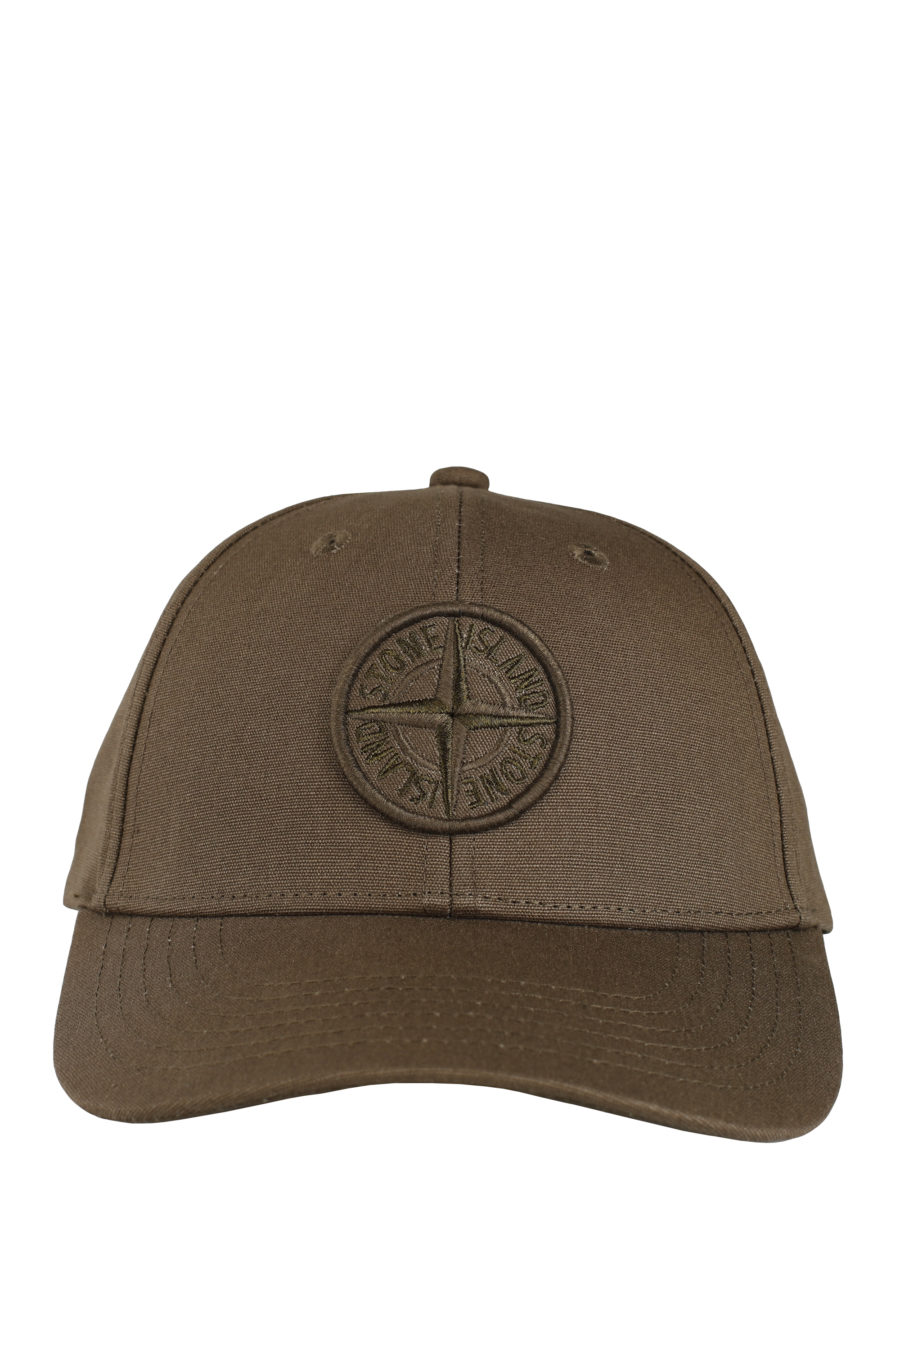 Militärische Mütze mit grünem Logo - IMG 9740